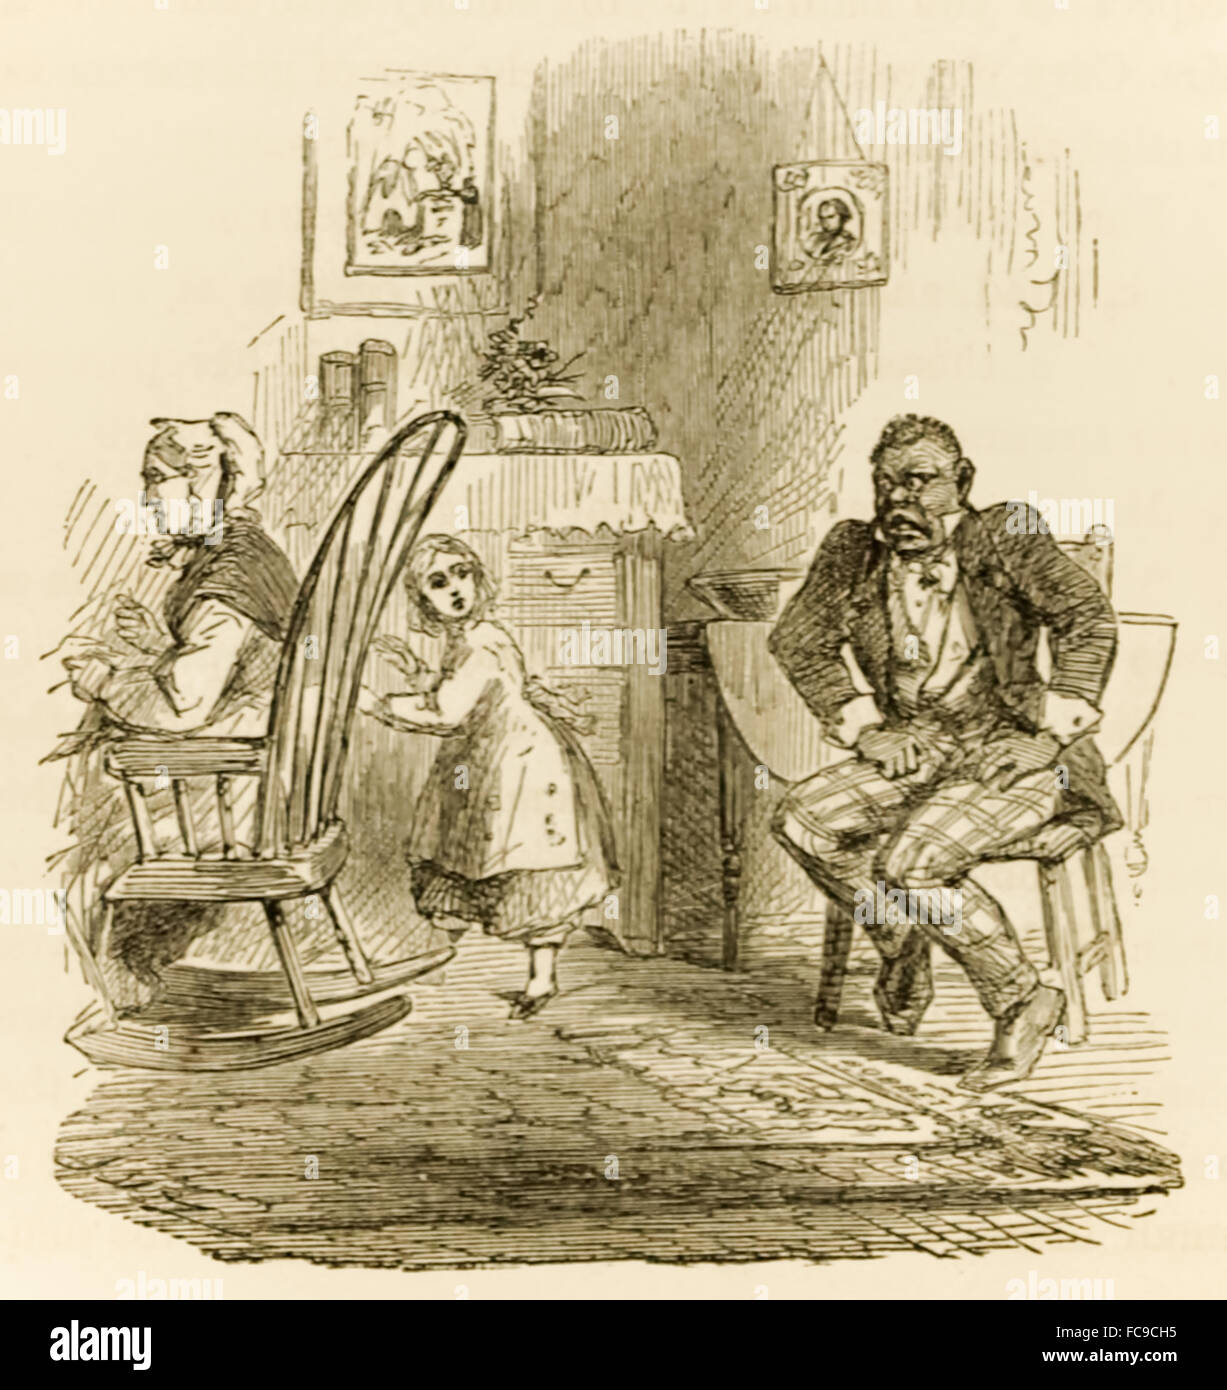 À partir de 'l'Ébène Idol' par Mme G.M. Flandre occidentale (1800-1856) publié est un pro-esclavage roman écrit en réponse à Harriet Beecher Stowe 1852 du roman anti-esclavagiste 'Uncle Tom's Cabin". Voir la description pour plus d'informations. Banque D'Images